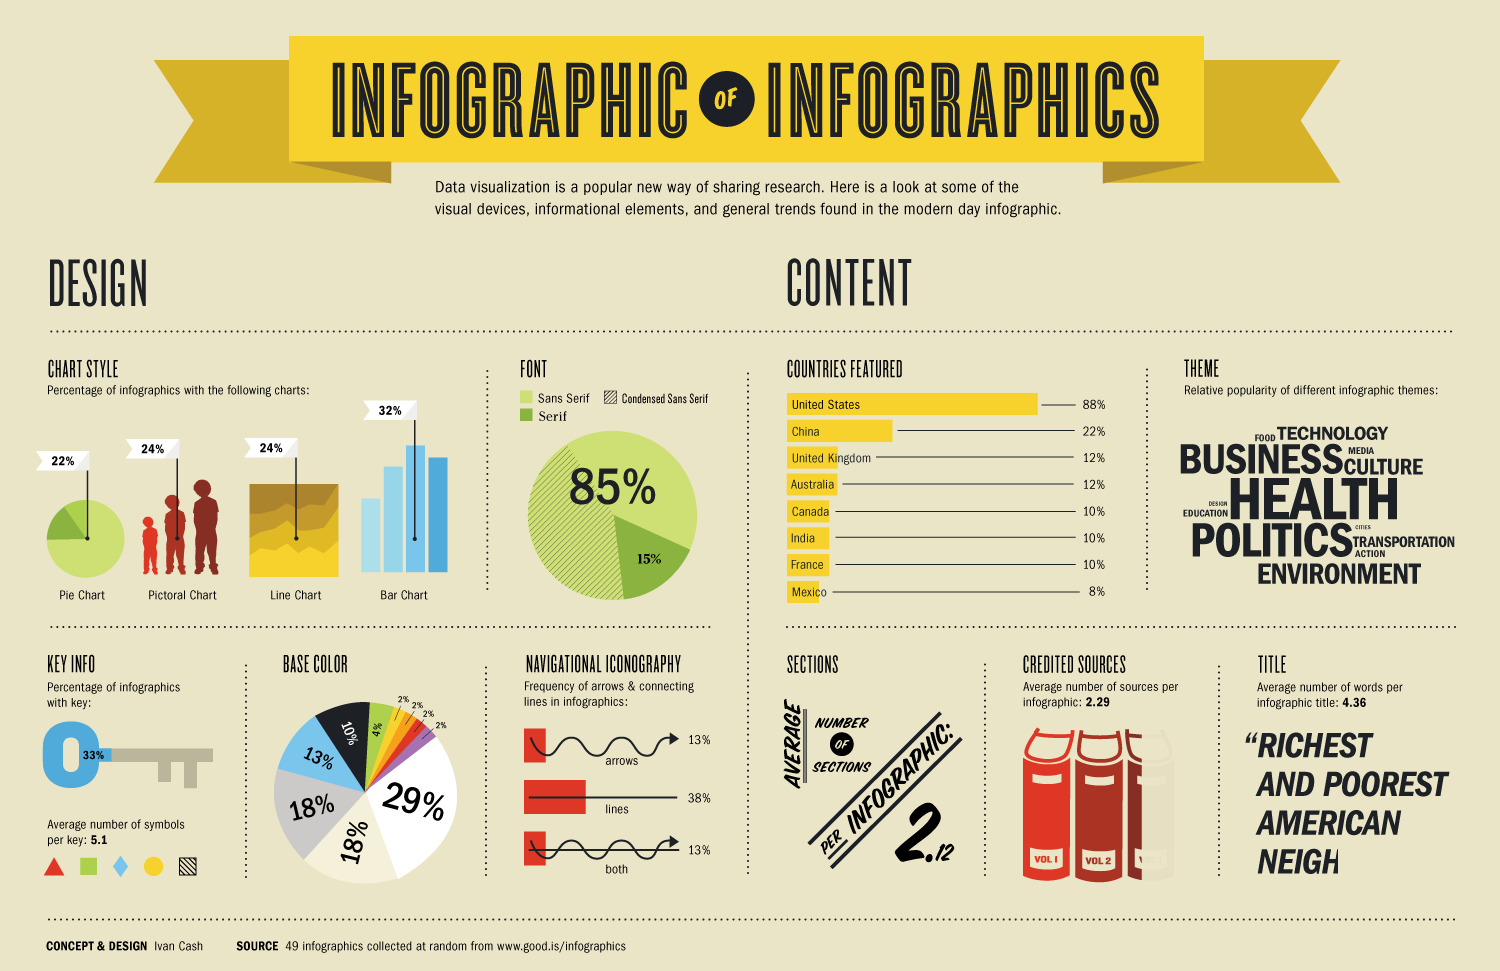 Infographic Infographics [infographic(s)]